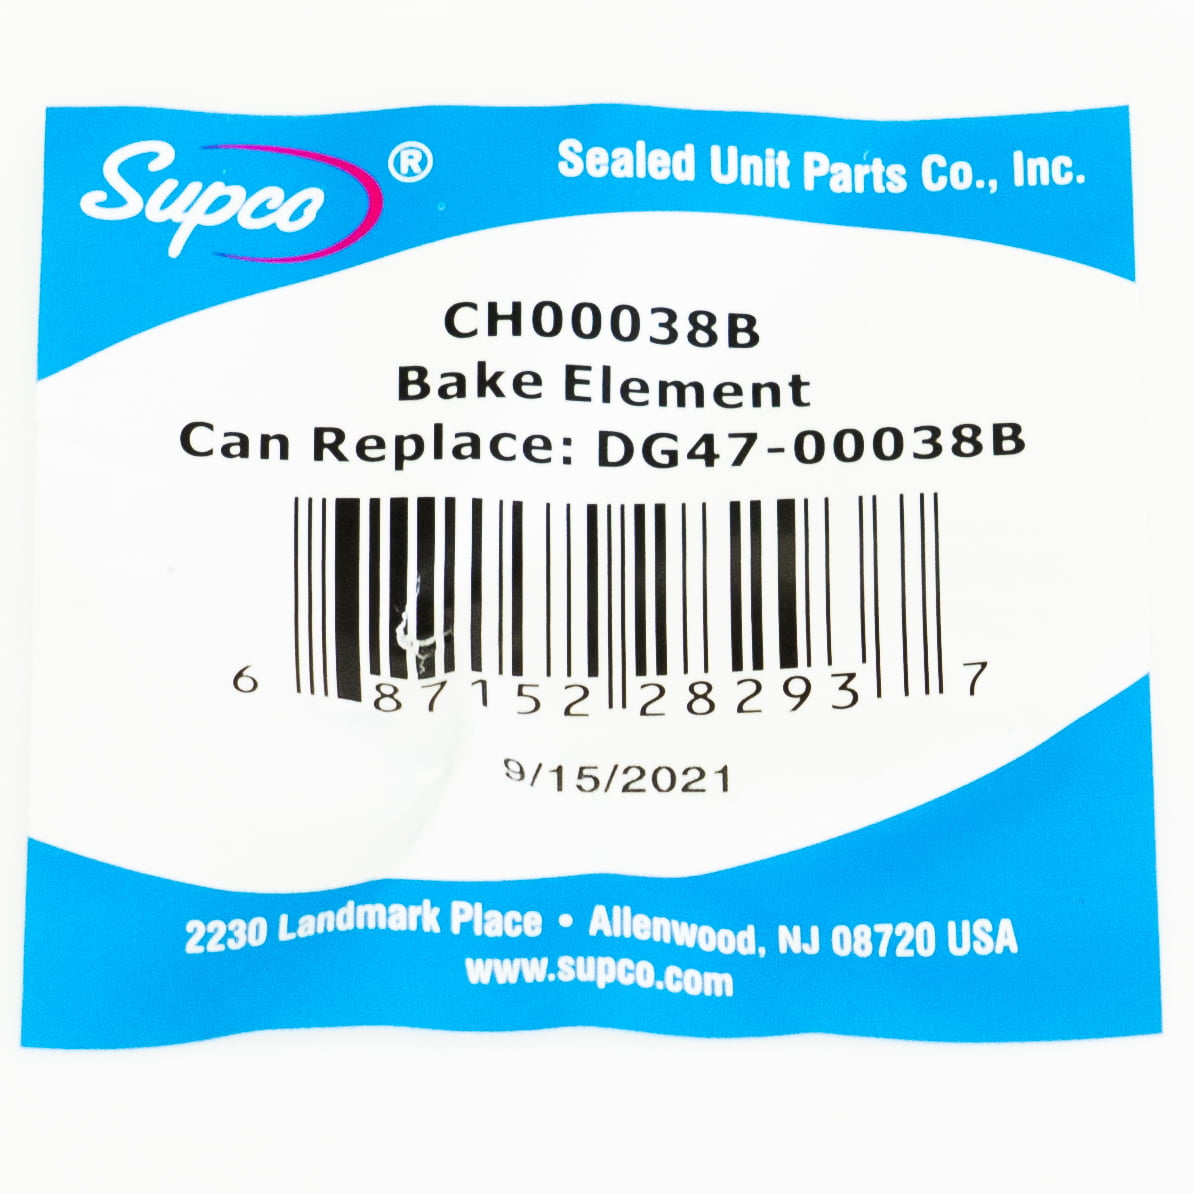 ERDG47-00038B ERP Bake Element for Samsung Range PS4240837 AP5623199 